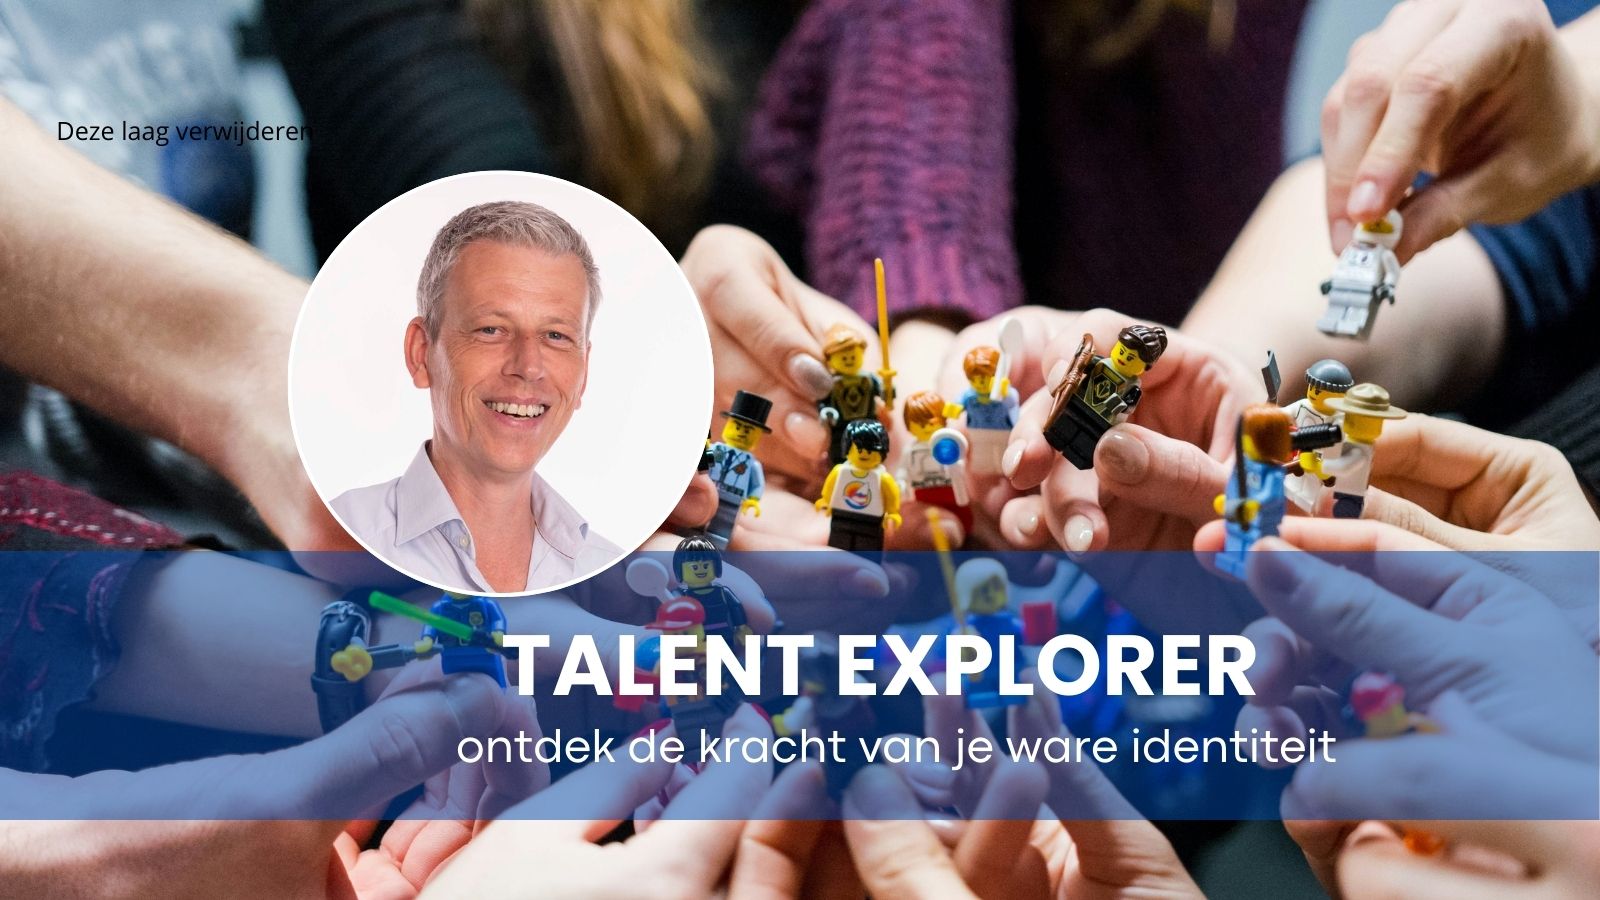 Personeelsuitje Groningen: Talent explorer